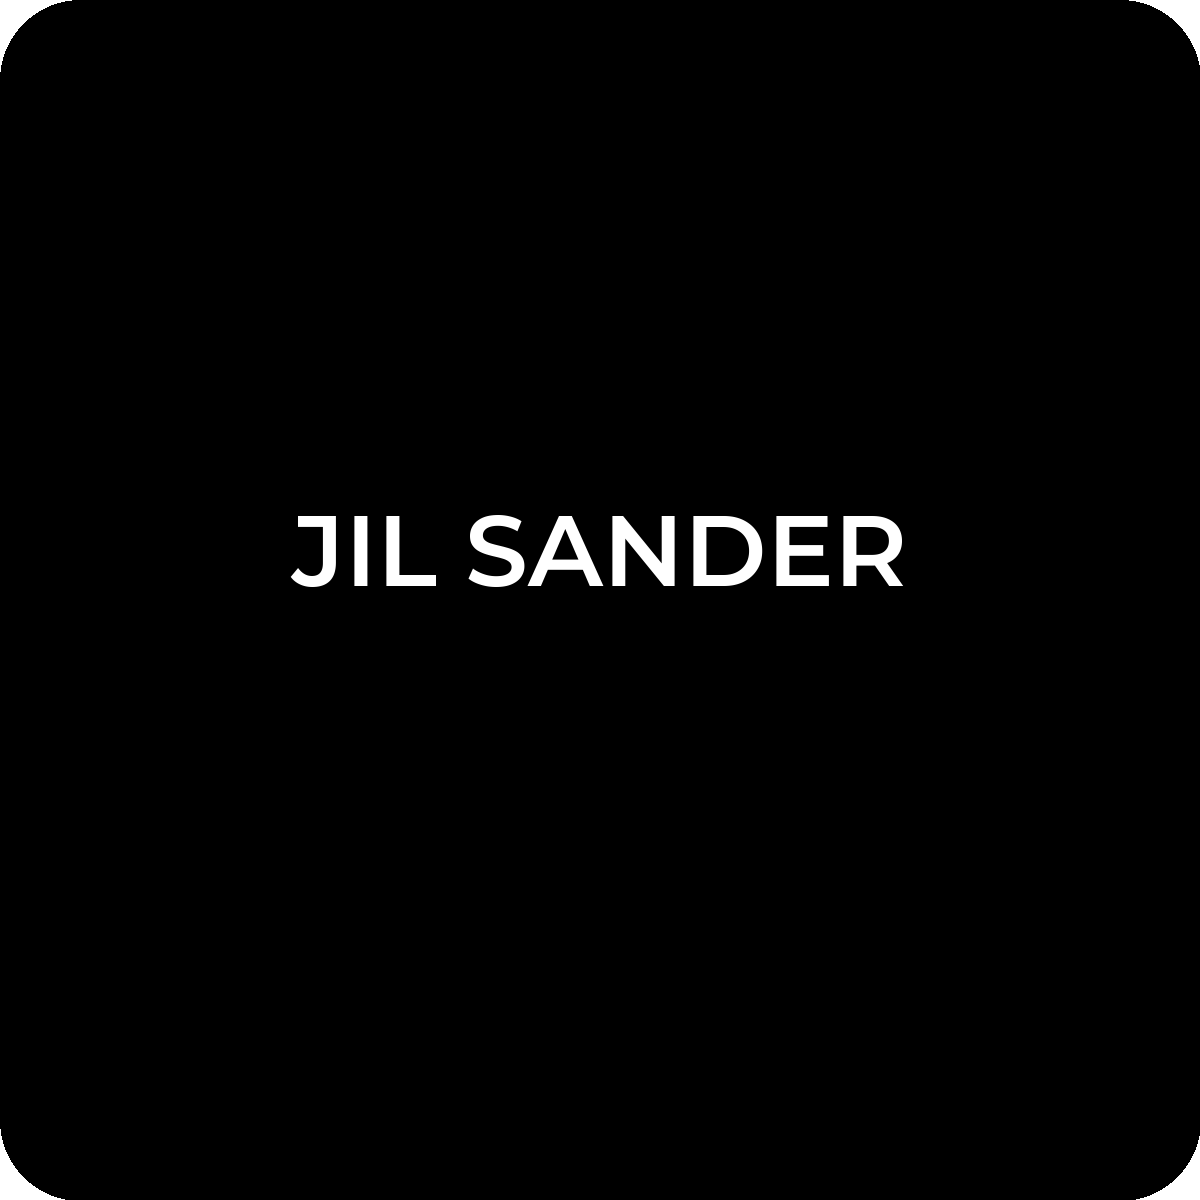 How to Identify Jil Sander